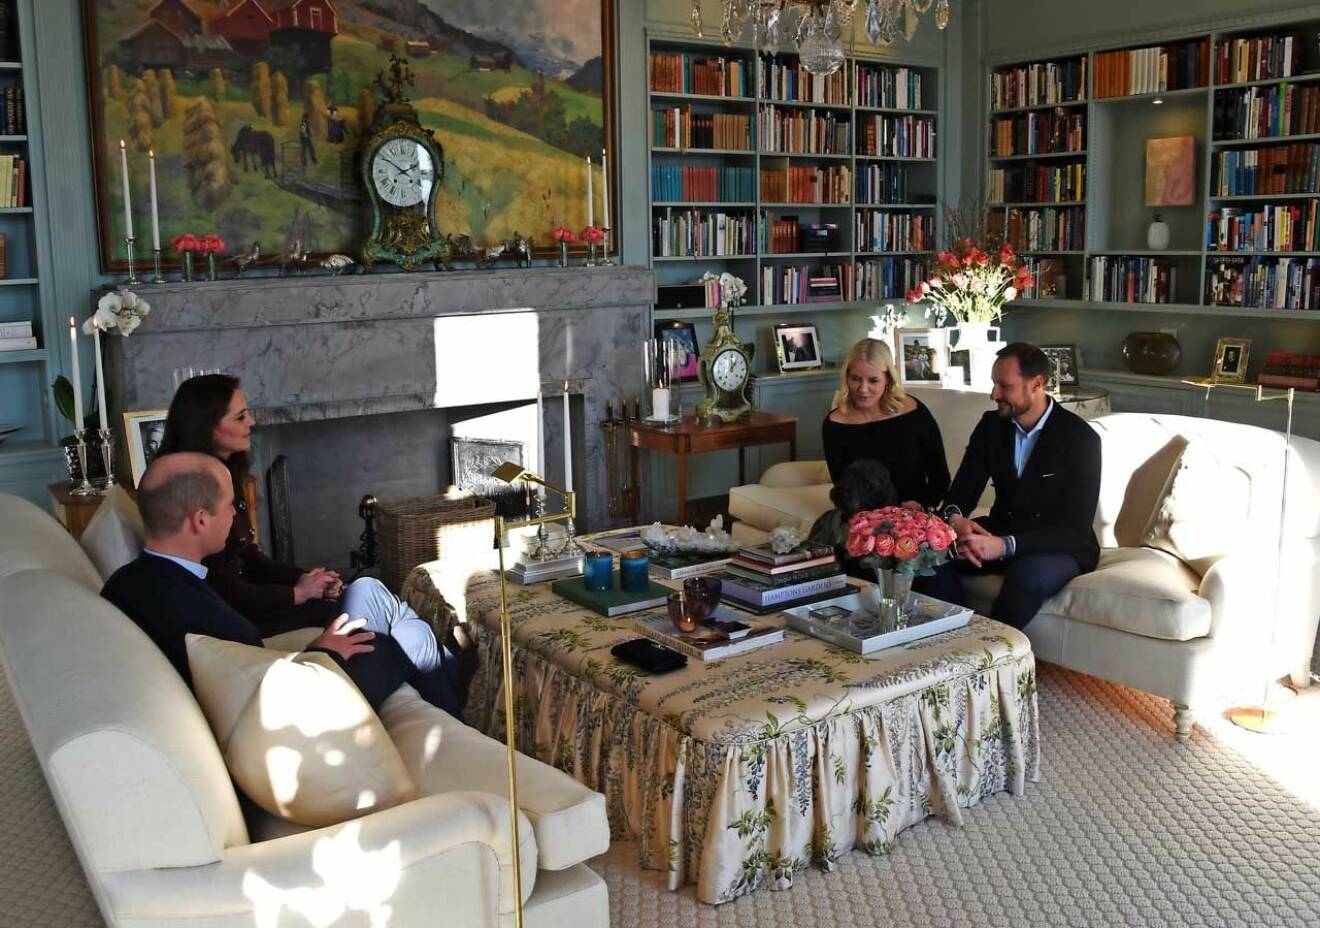 Vardagsrummet på Skaugum med sin volangförsedda jättepuff. När bilden togs var Kate och William hos Mette-Marit och Haakon på lunch.